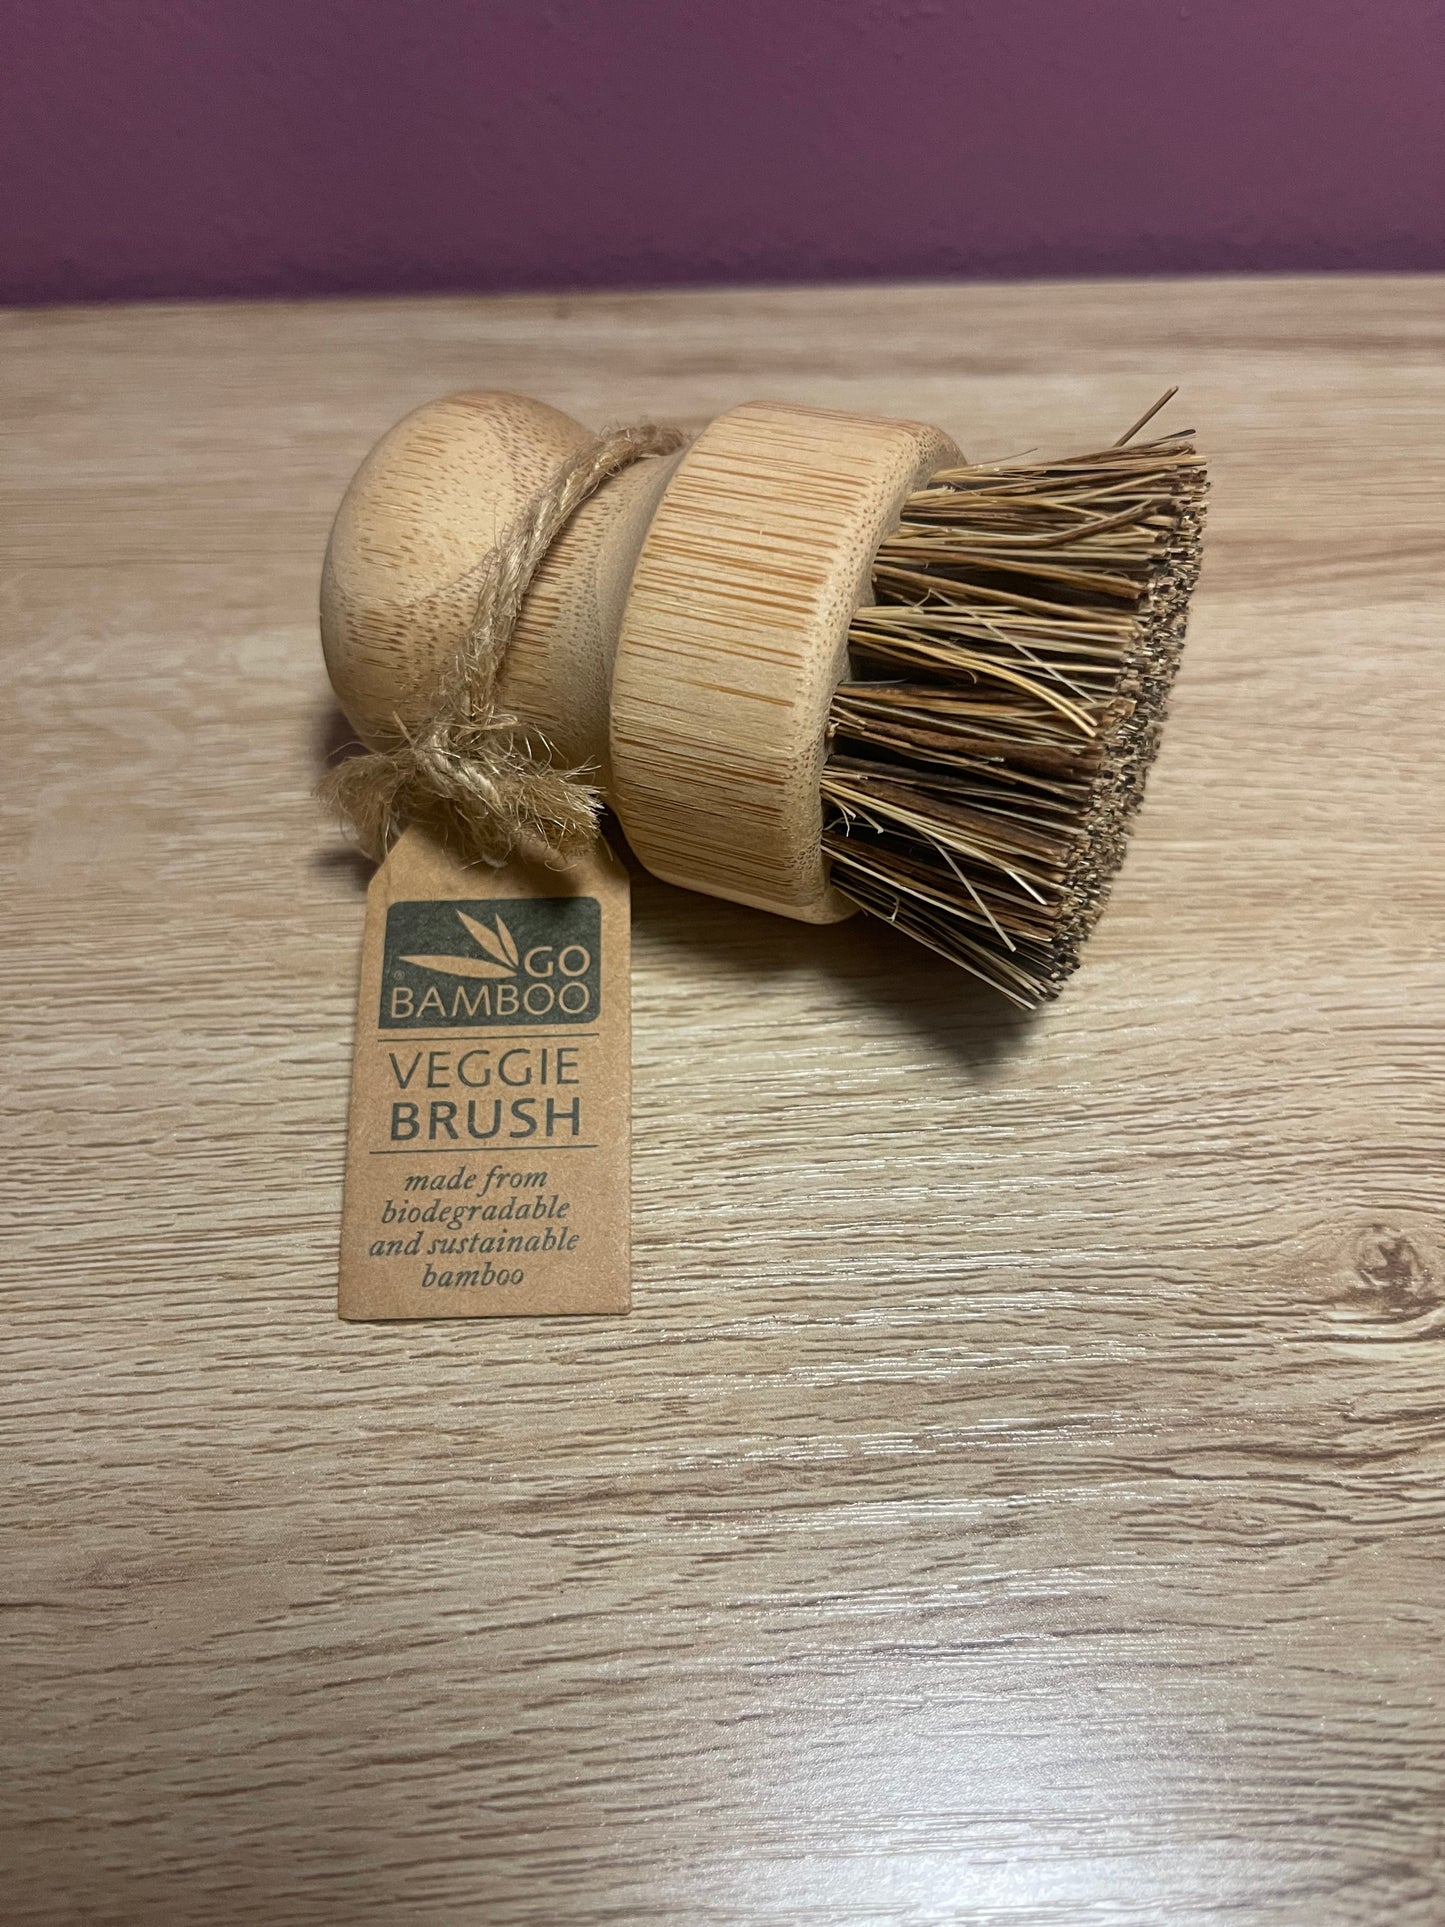 Veggie Brush - Bamboo